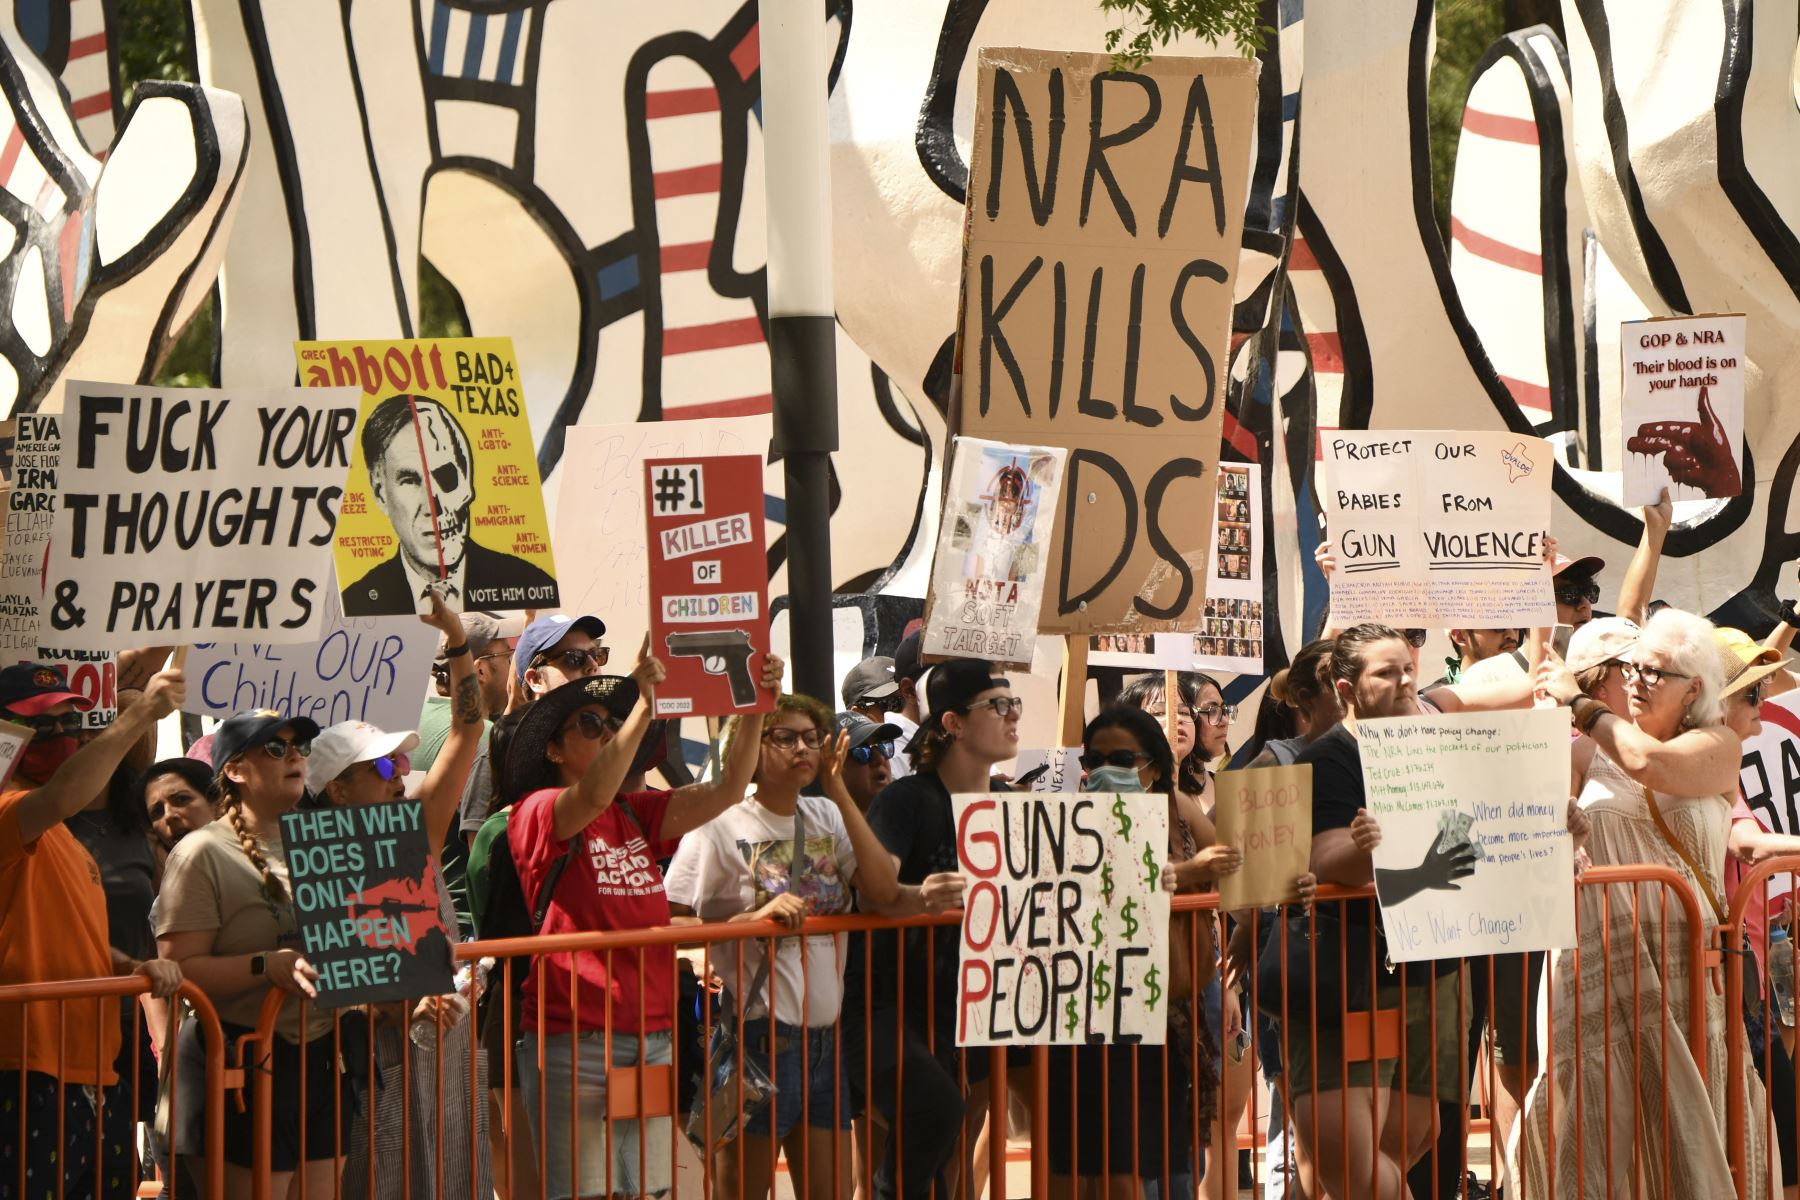 Los manifestantes en apoyo del control de armas sostienen carteles en la Reunión Anual de la Asociación Nacional del Rifle en el Centro de Convenciones George R. Brown, el 27 de mayo de 2022, en Houston, Texas.
Foto: AFP